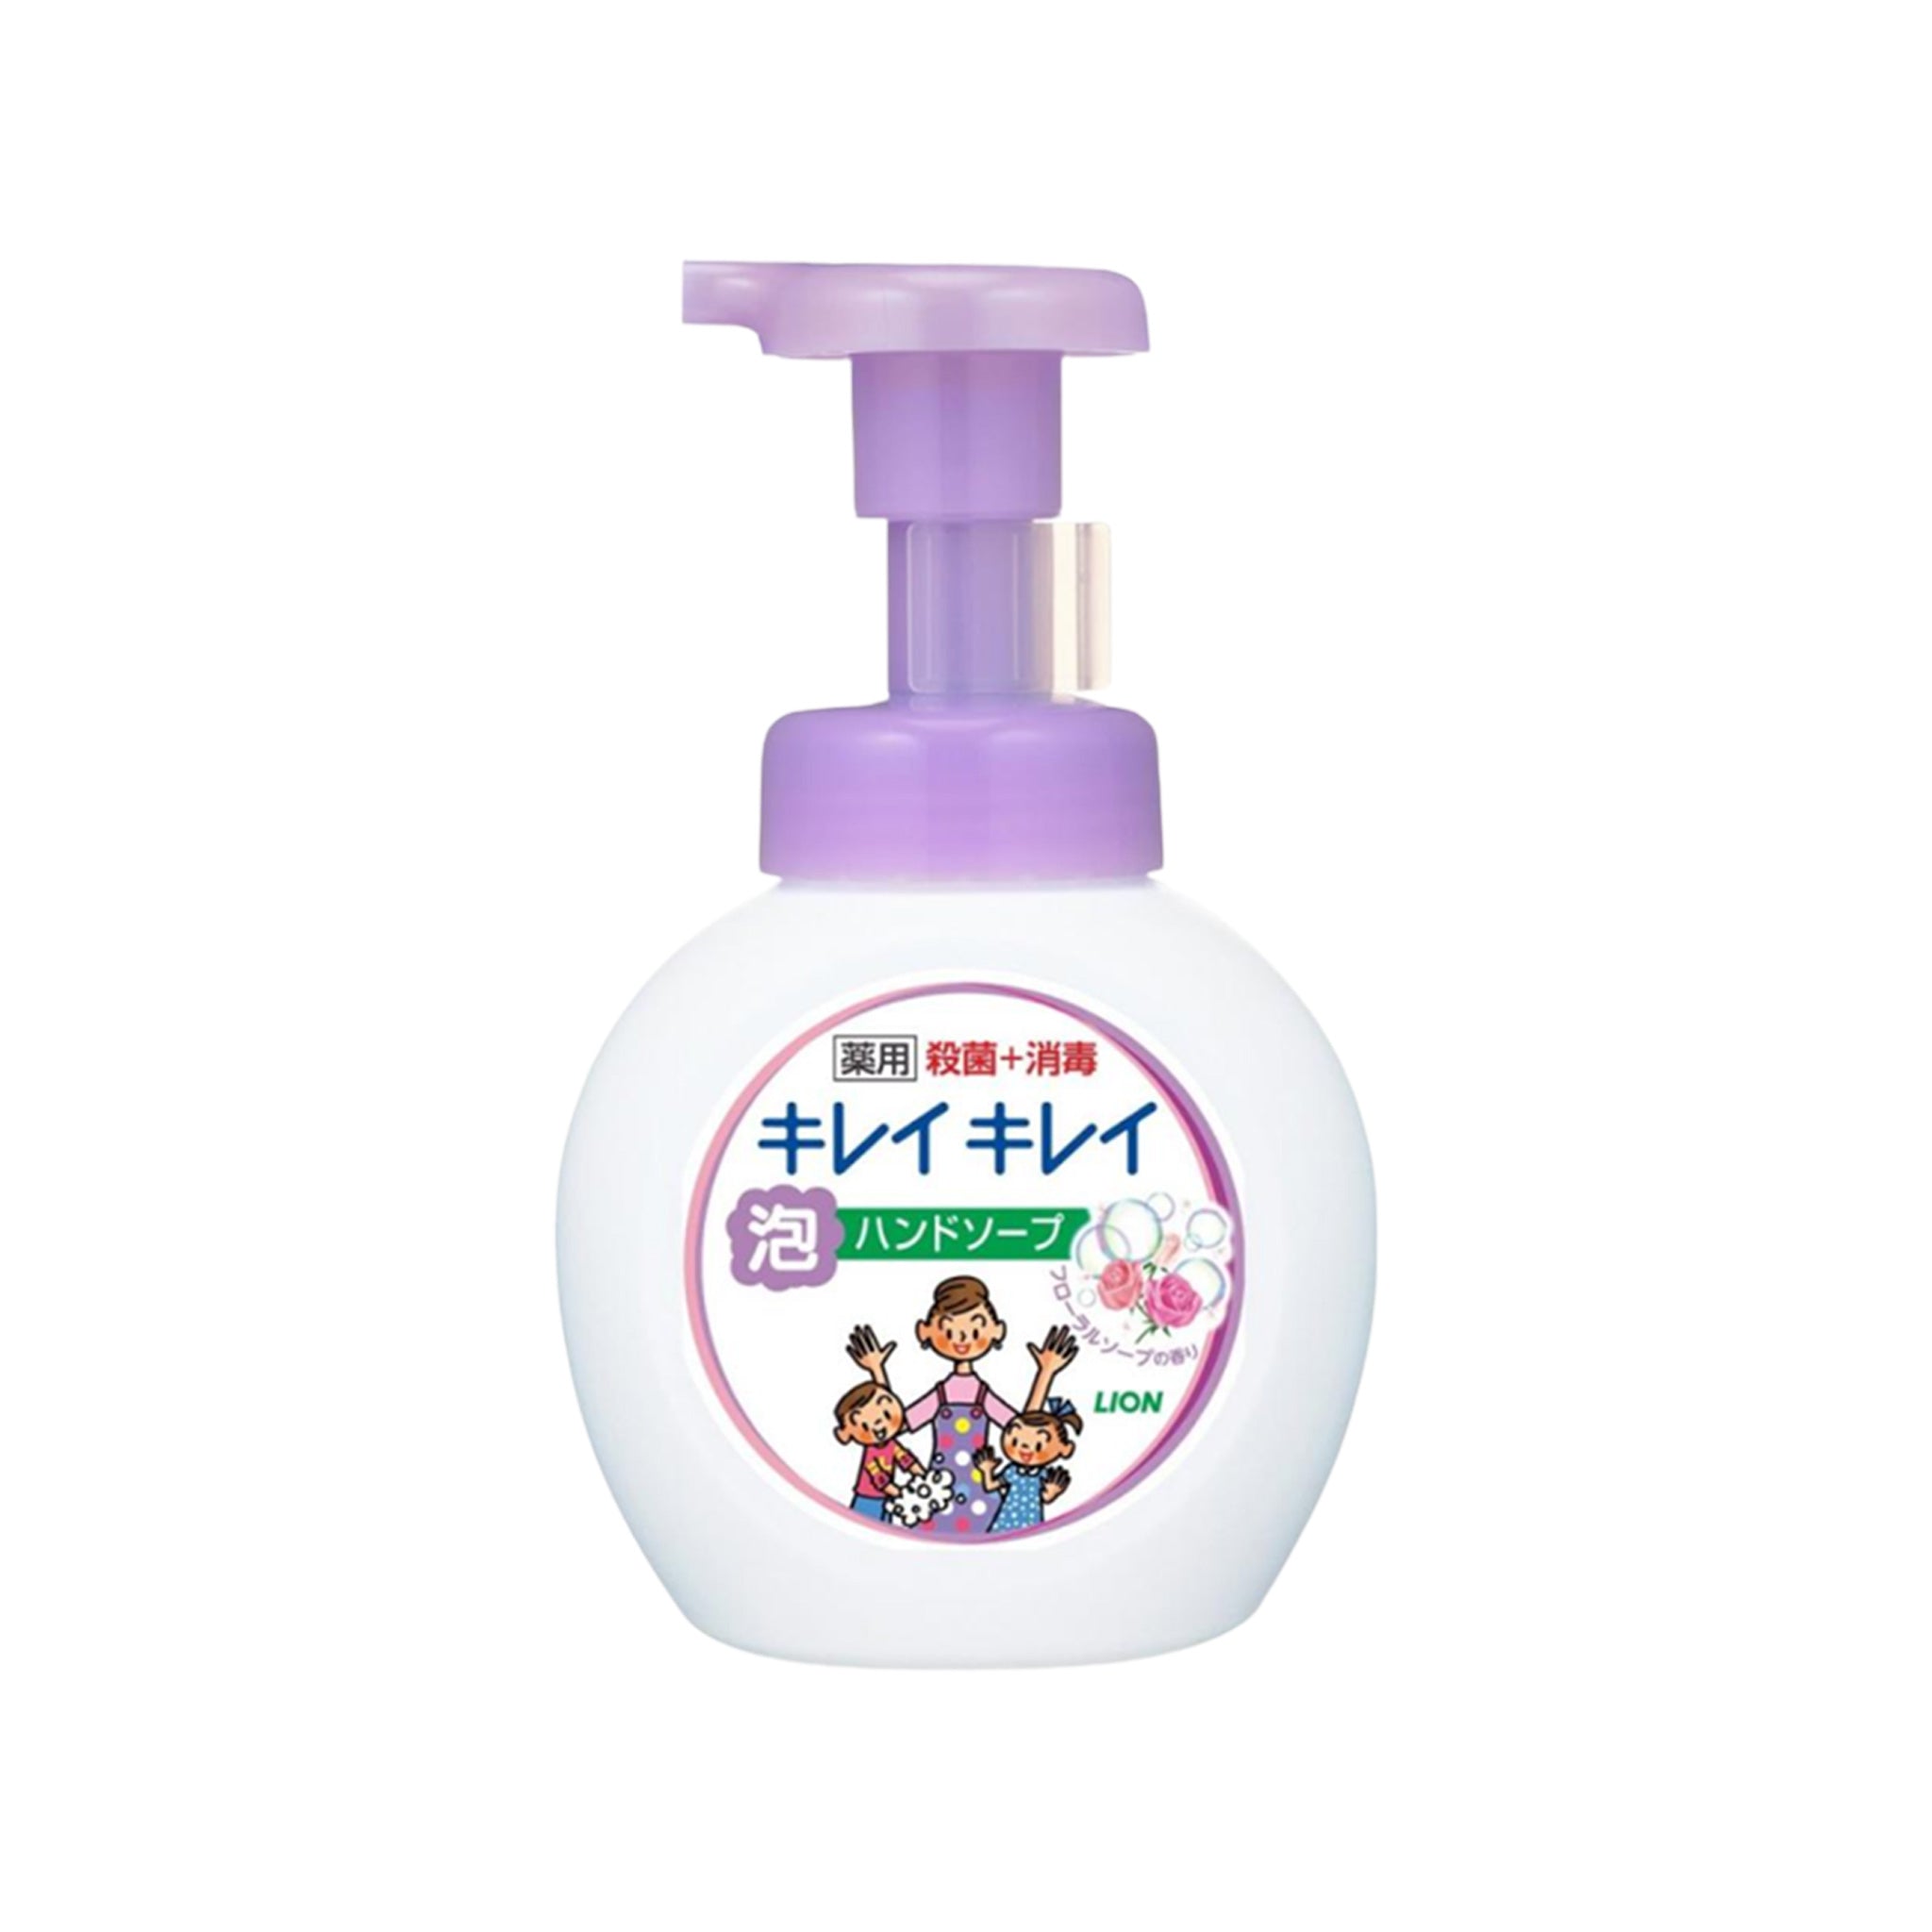 LION KireiKirei Foam Hand Soap 250ml